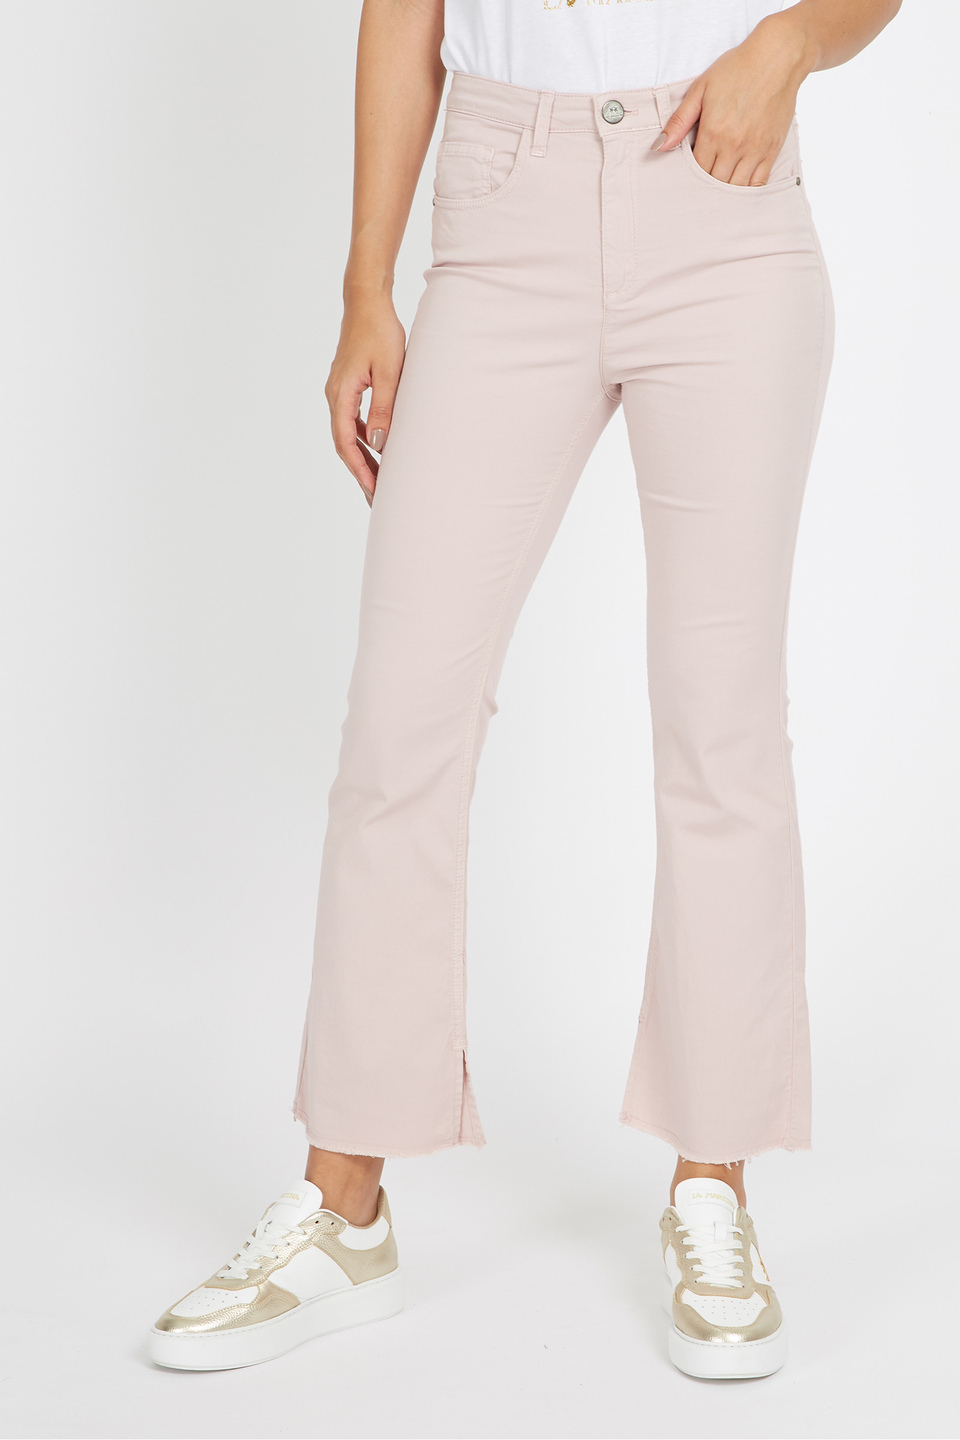 Pantalone da donna in cotone elasticizzato 5 tasche regular fit - Vane | La Martina - Official Online Shop